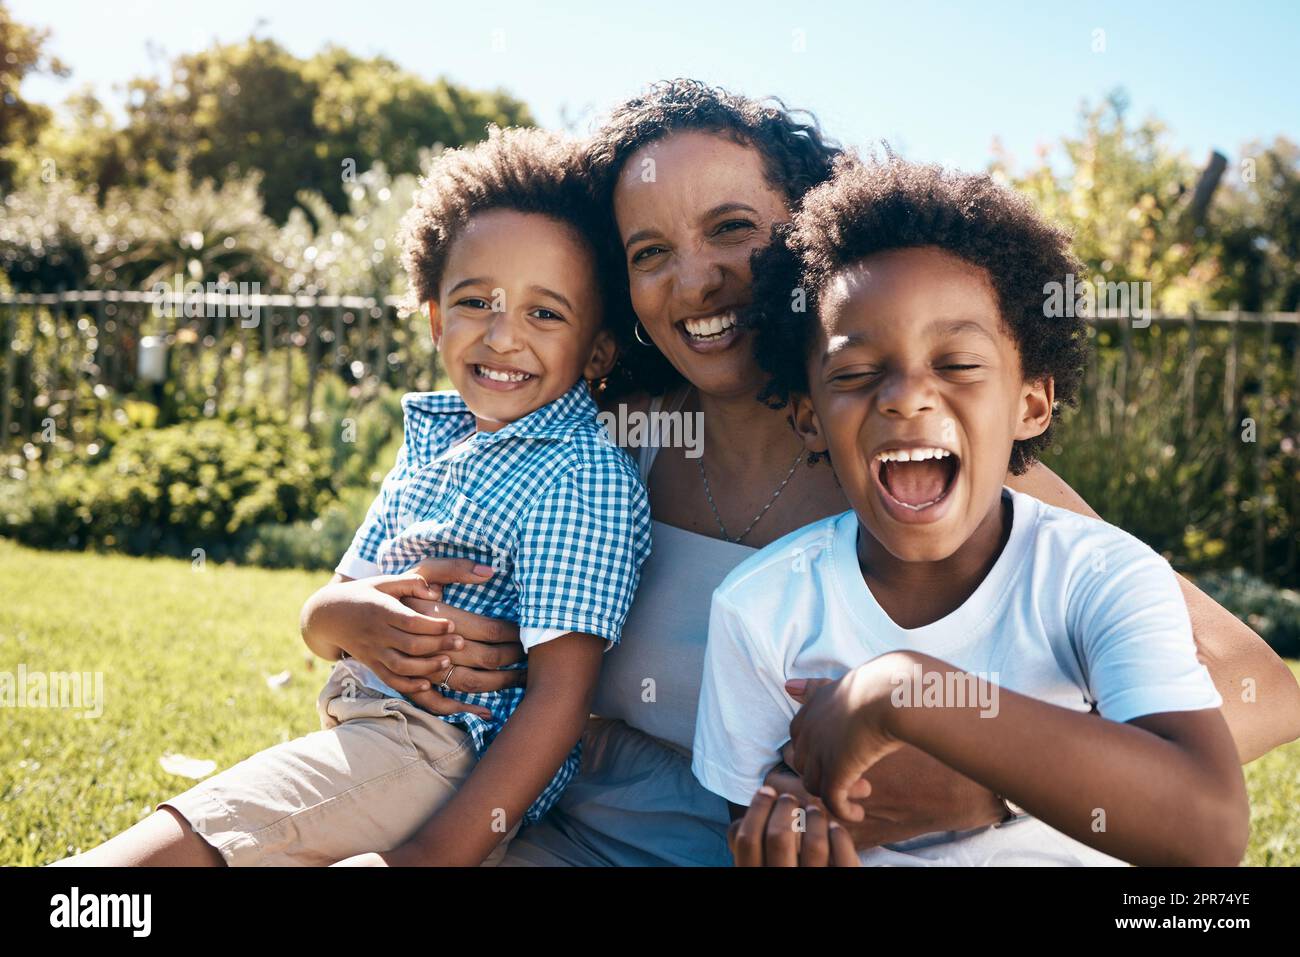 Un bambino eccitato con afro seduto fuori sull'erba con sua madre e suo fratello. Energica famiglia afro-americana che trascorre del tempo all'aperto nel parco o nel cortile sul retro. Mamma che abbraccia due figli Foto Stock